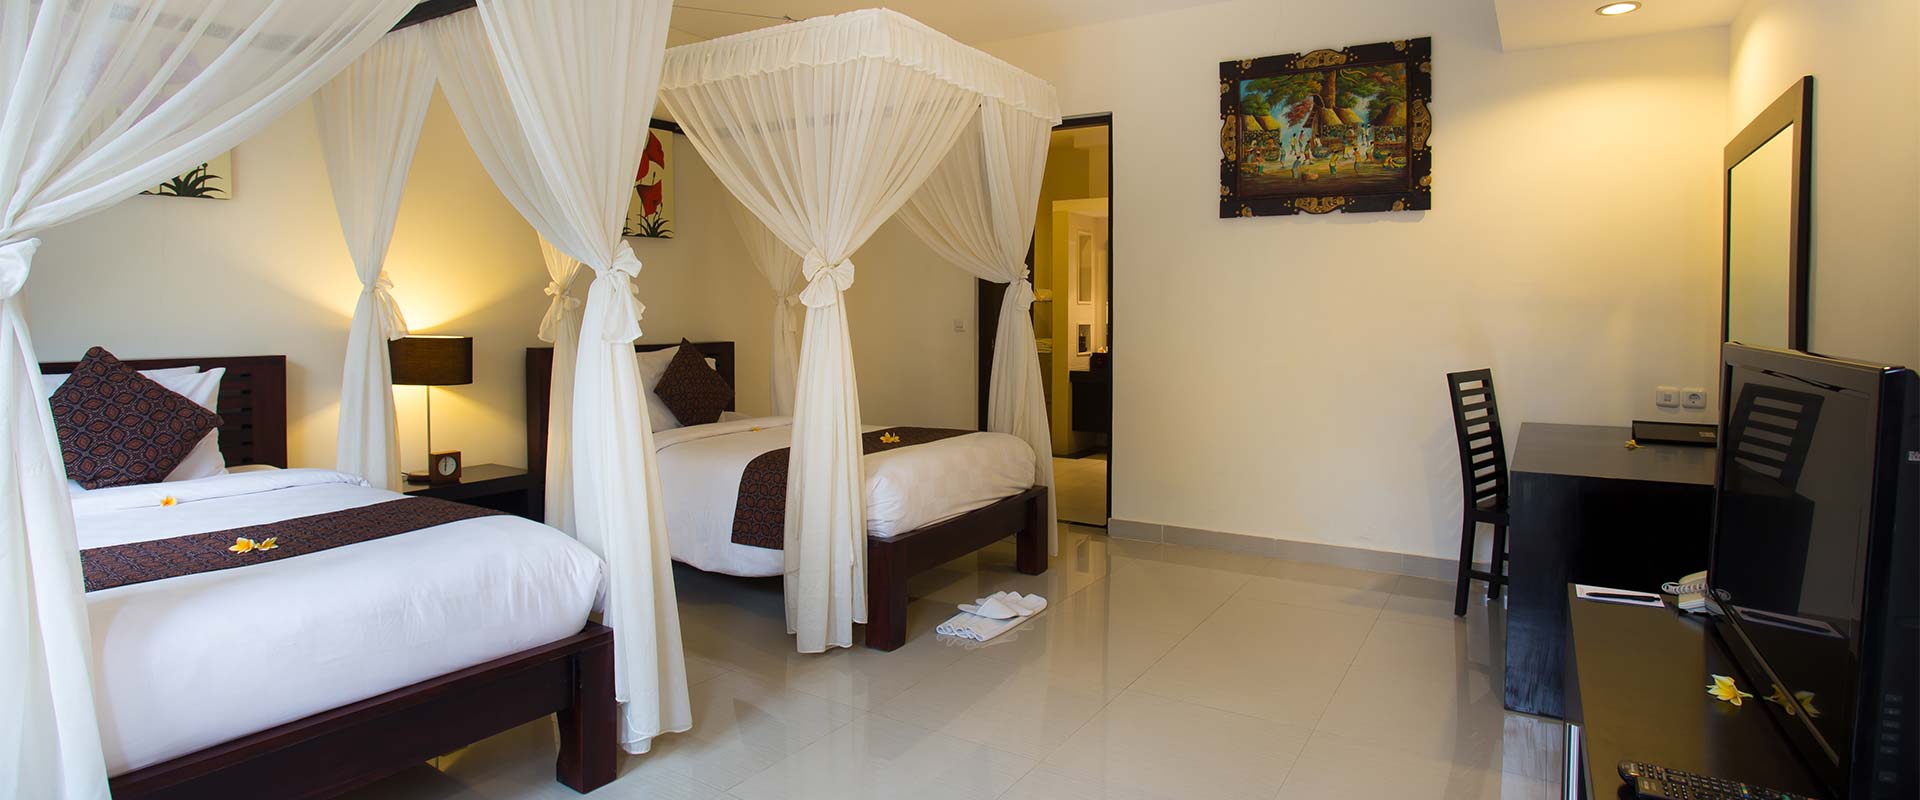 3 Bedrooms Bali Yubi Villas